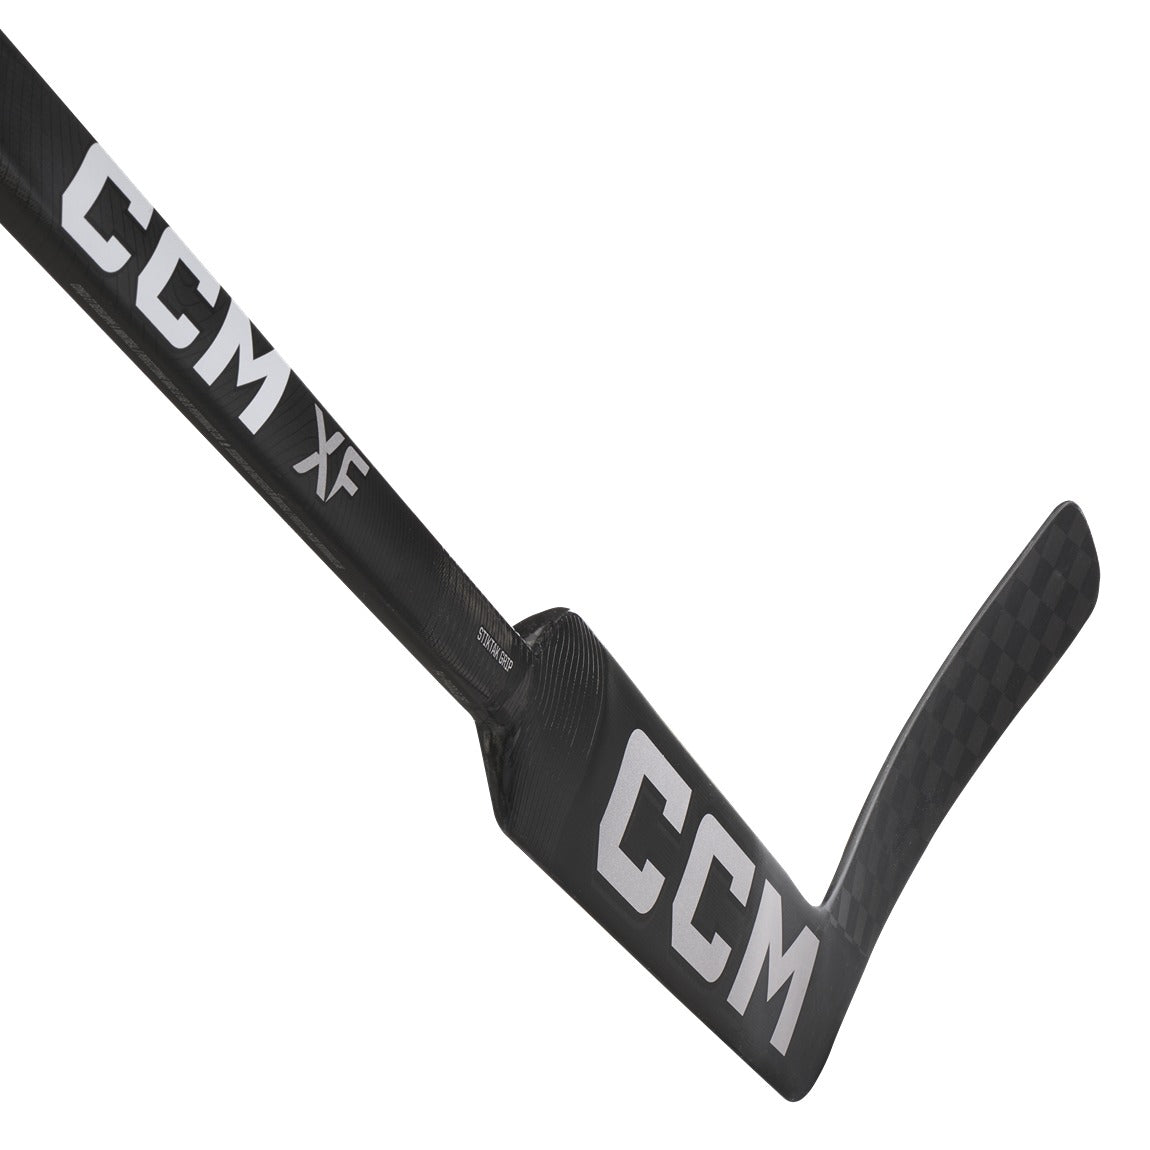 CCM XF Goalie Stick (23") - Intermediate